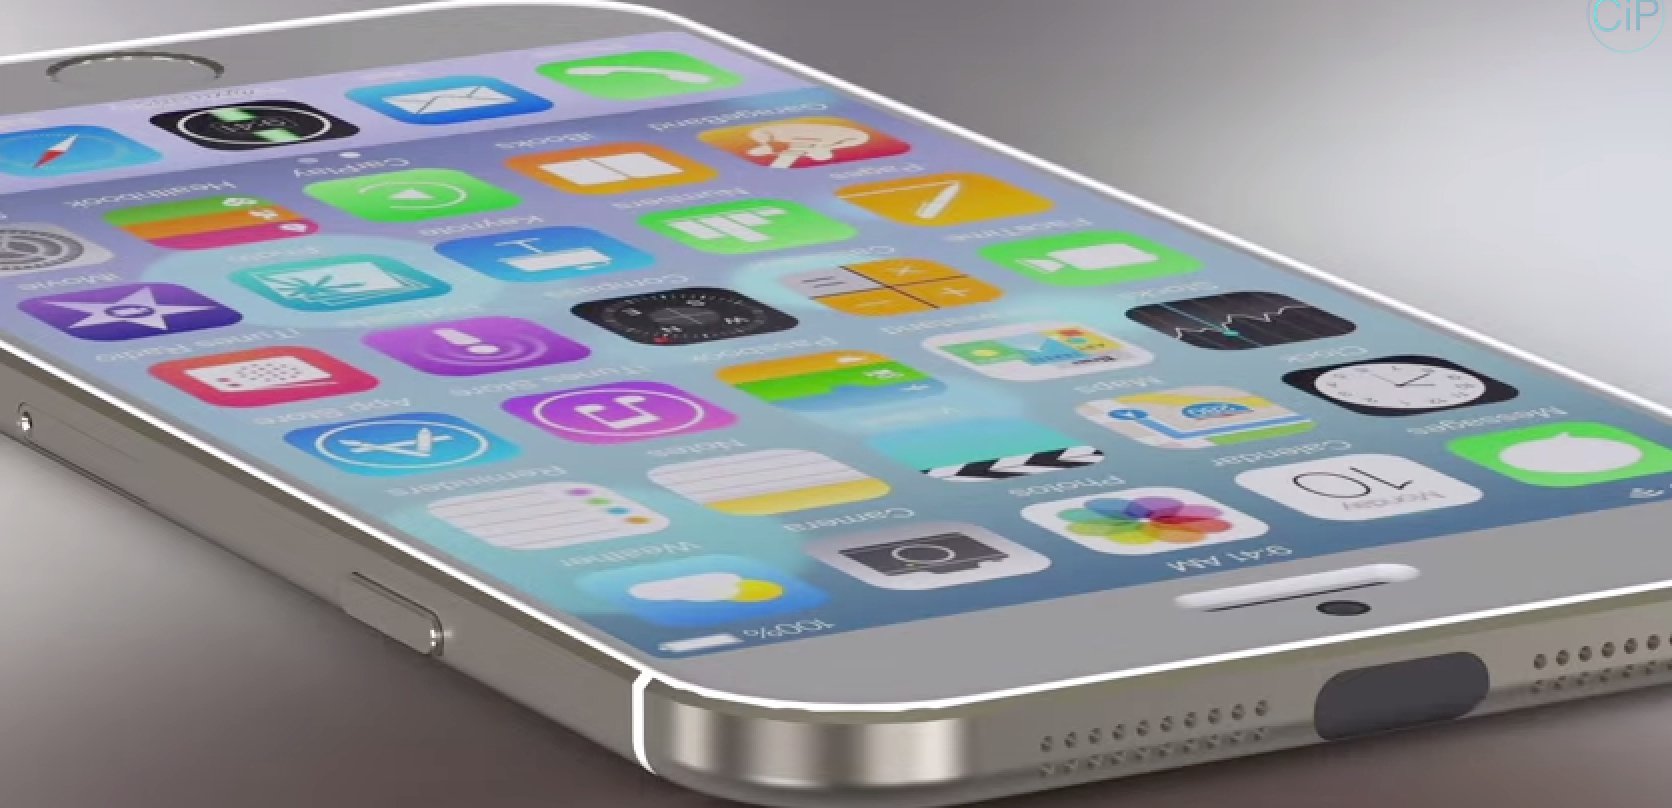 iPhone 6 mit iOS 8 im Vergleich mit Samsung Galaxy S5 (Konzept) 1